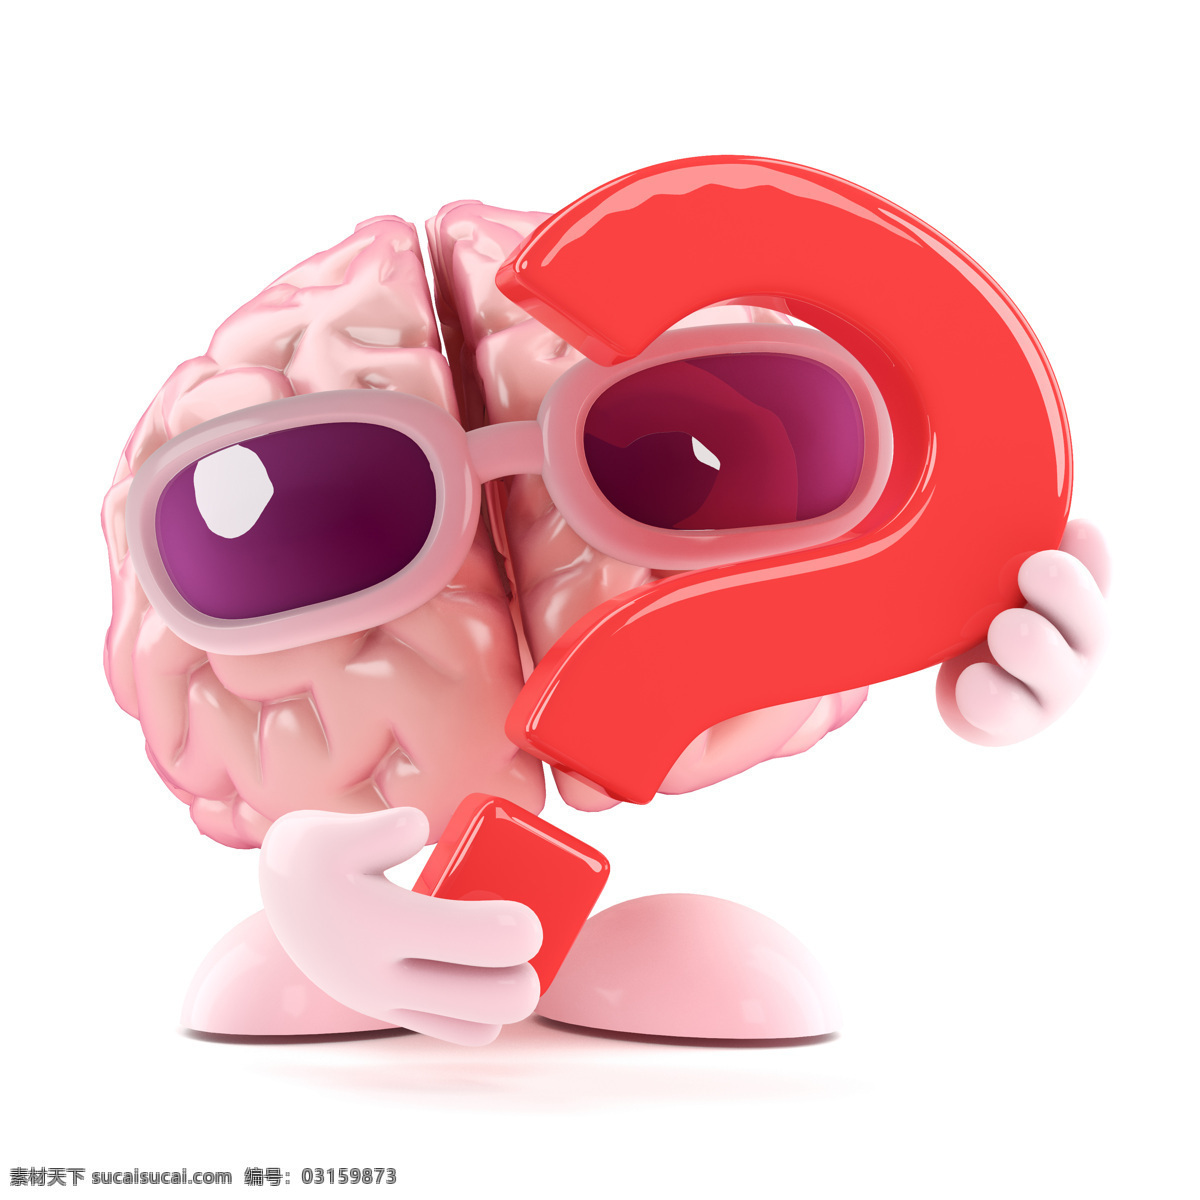 大脑 漫画 问号 人类大脑 大脑漫画 大脑设计 卡通大脑 大脑人物 虚拟人物 儿童卡通 卡通动画 脑细胞 脑容量 太阳镜 动漫动画